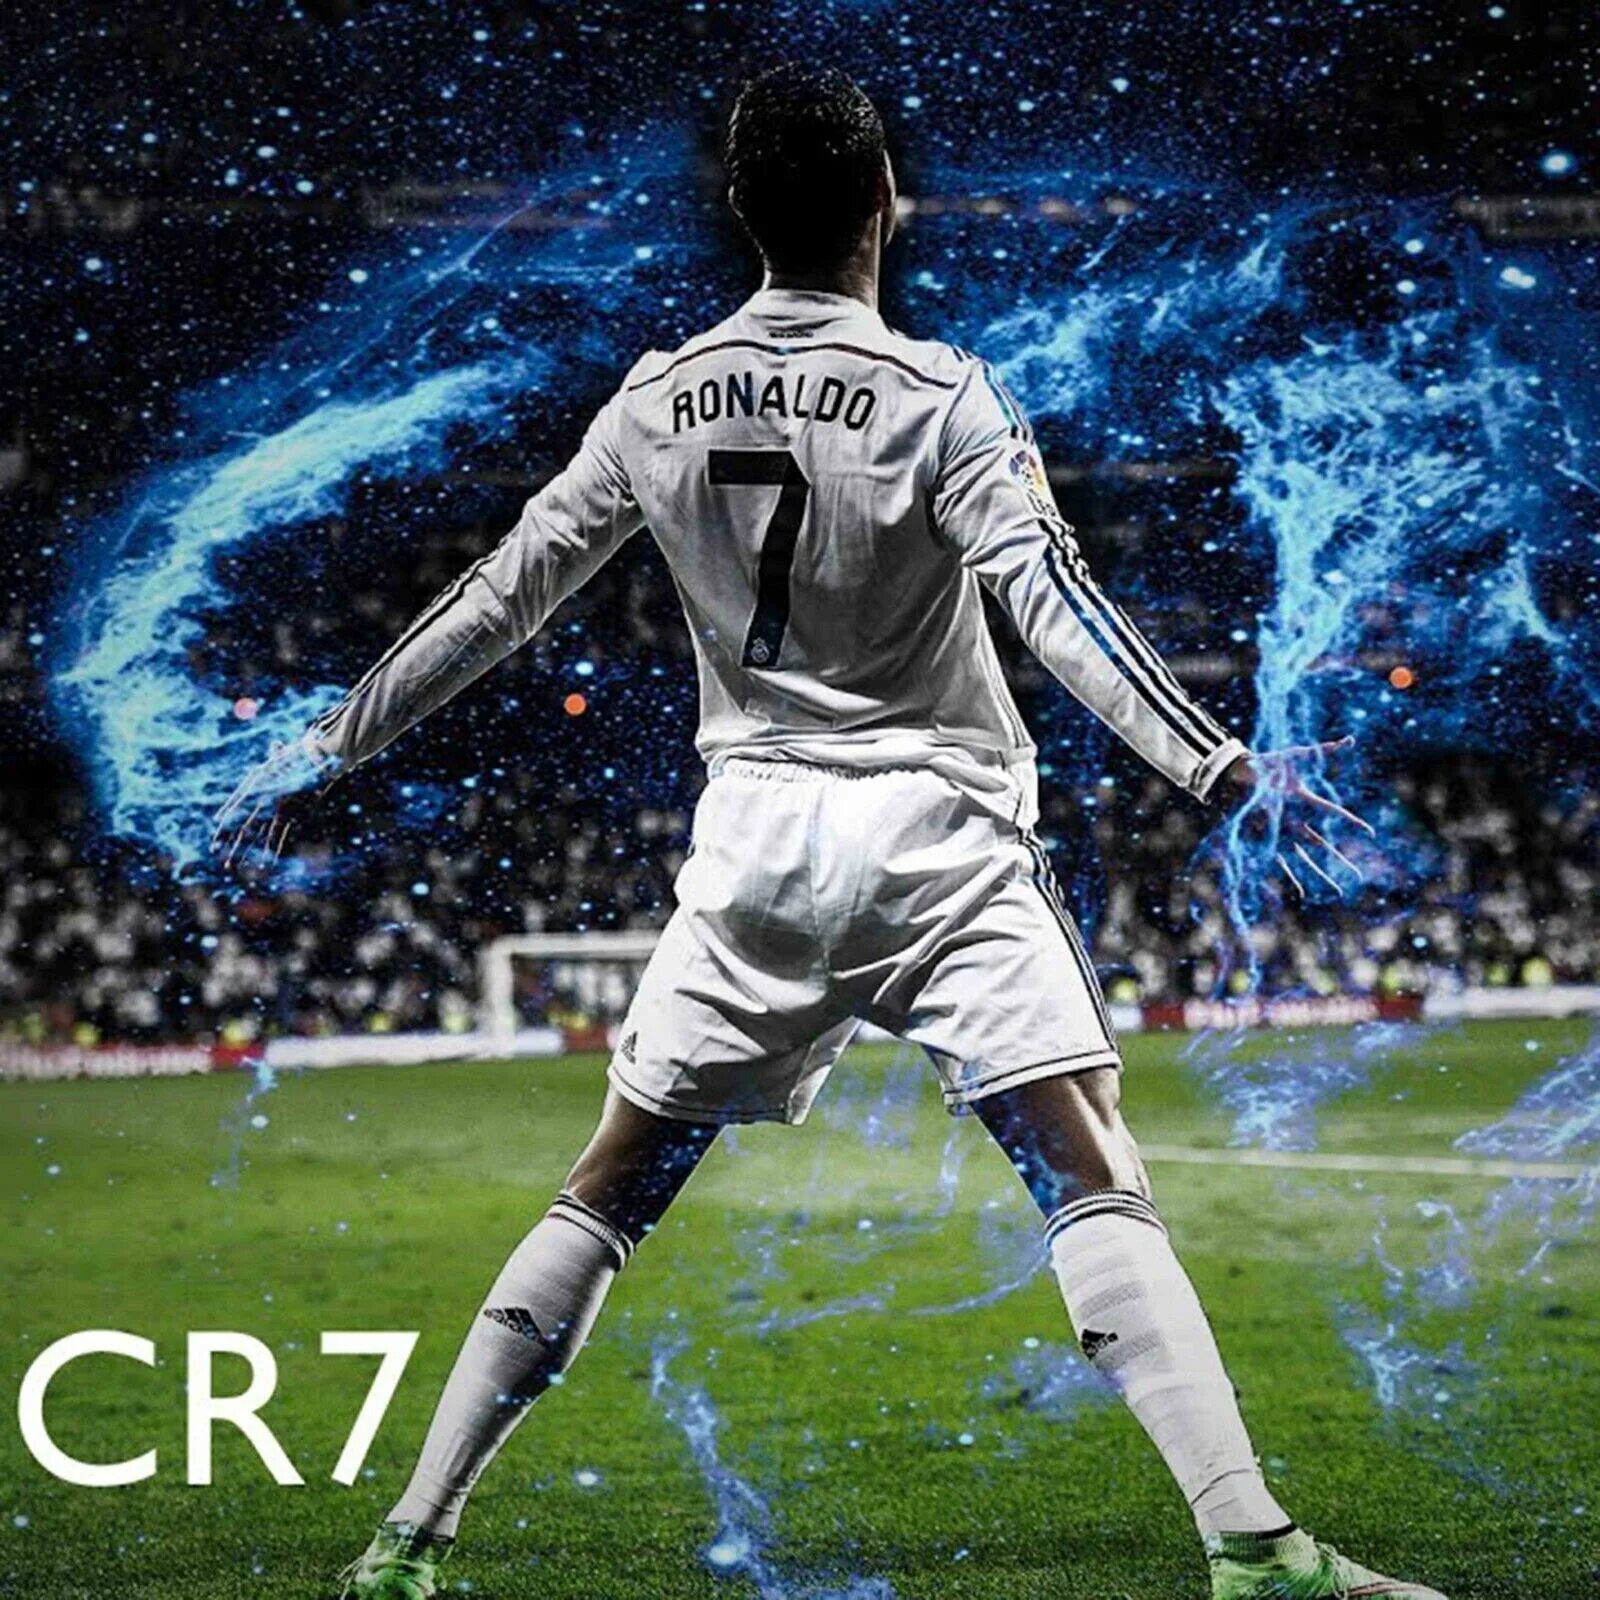 Cr7 ronaldo. Ronaldo cr7. Криштиану Роналду cr7 через себя. Заставка Роналдо. Роналду Постер.